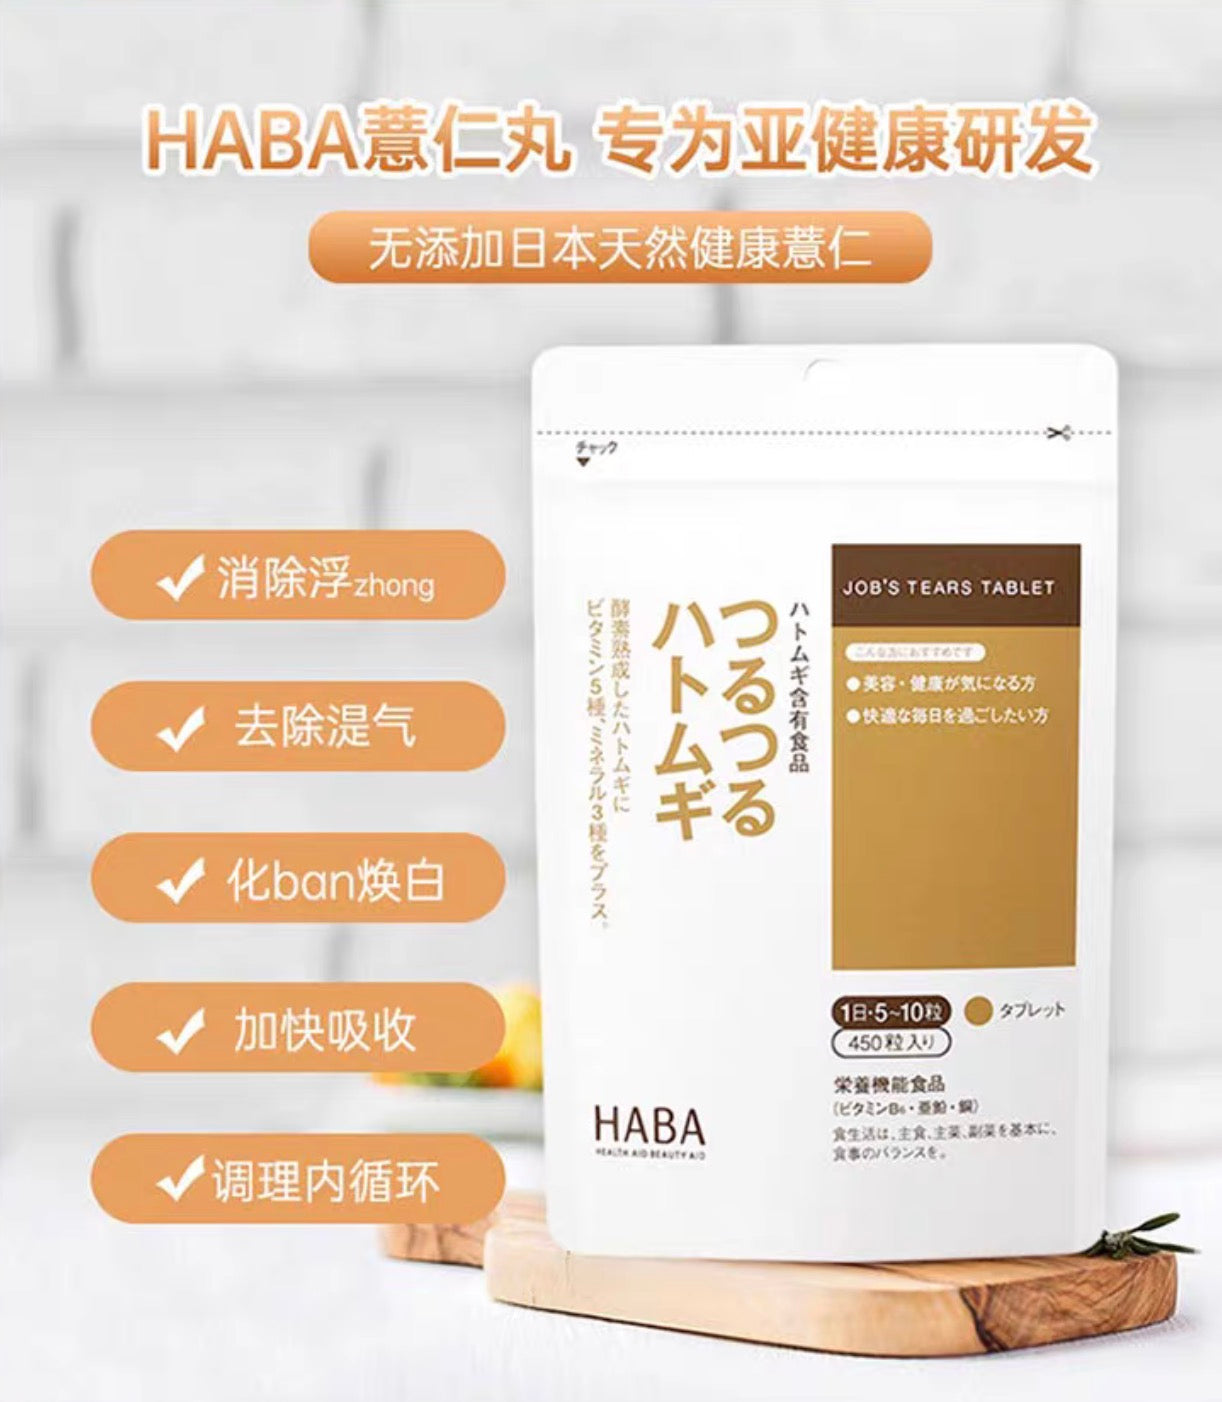 HABA薏仁丸450粒装